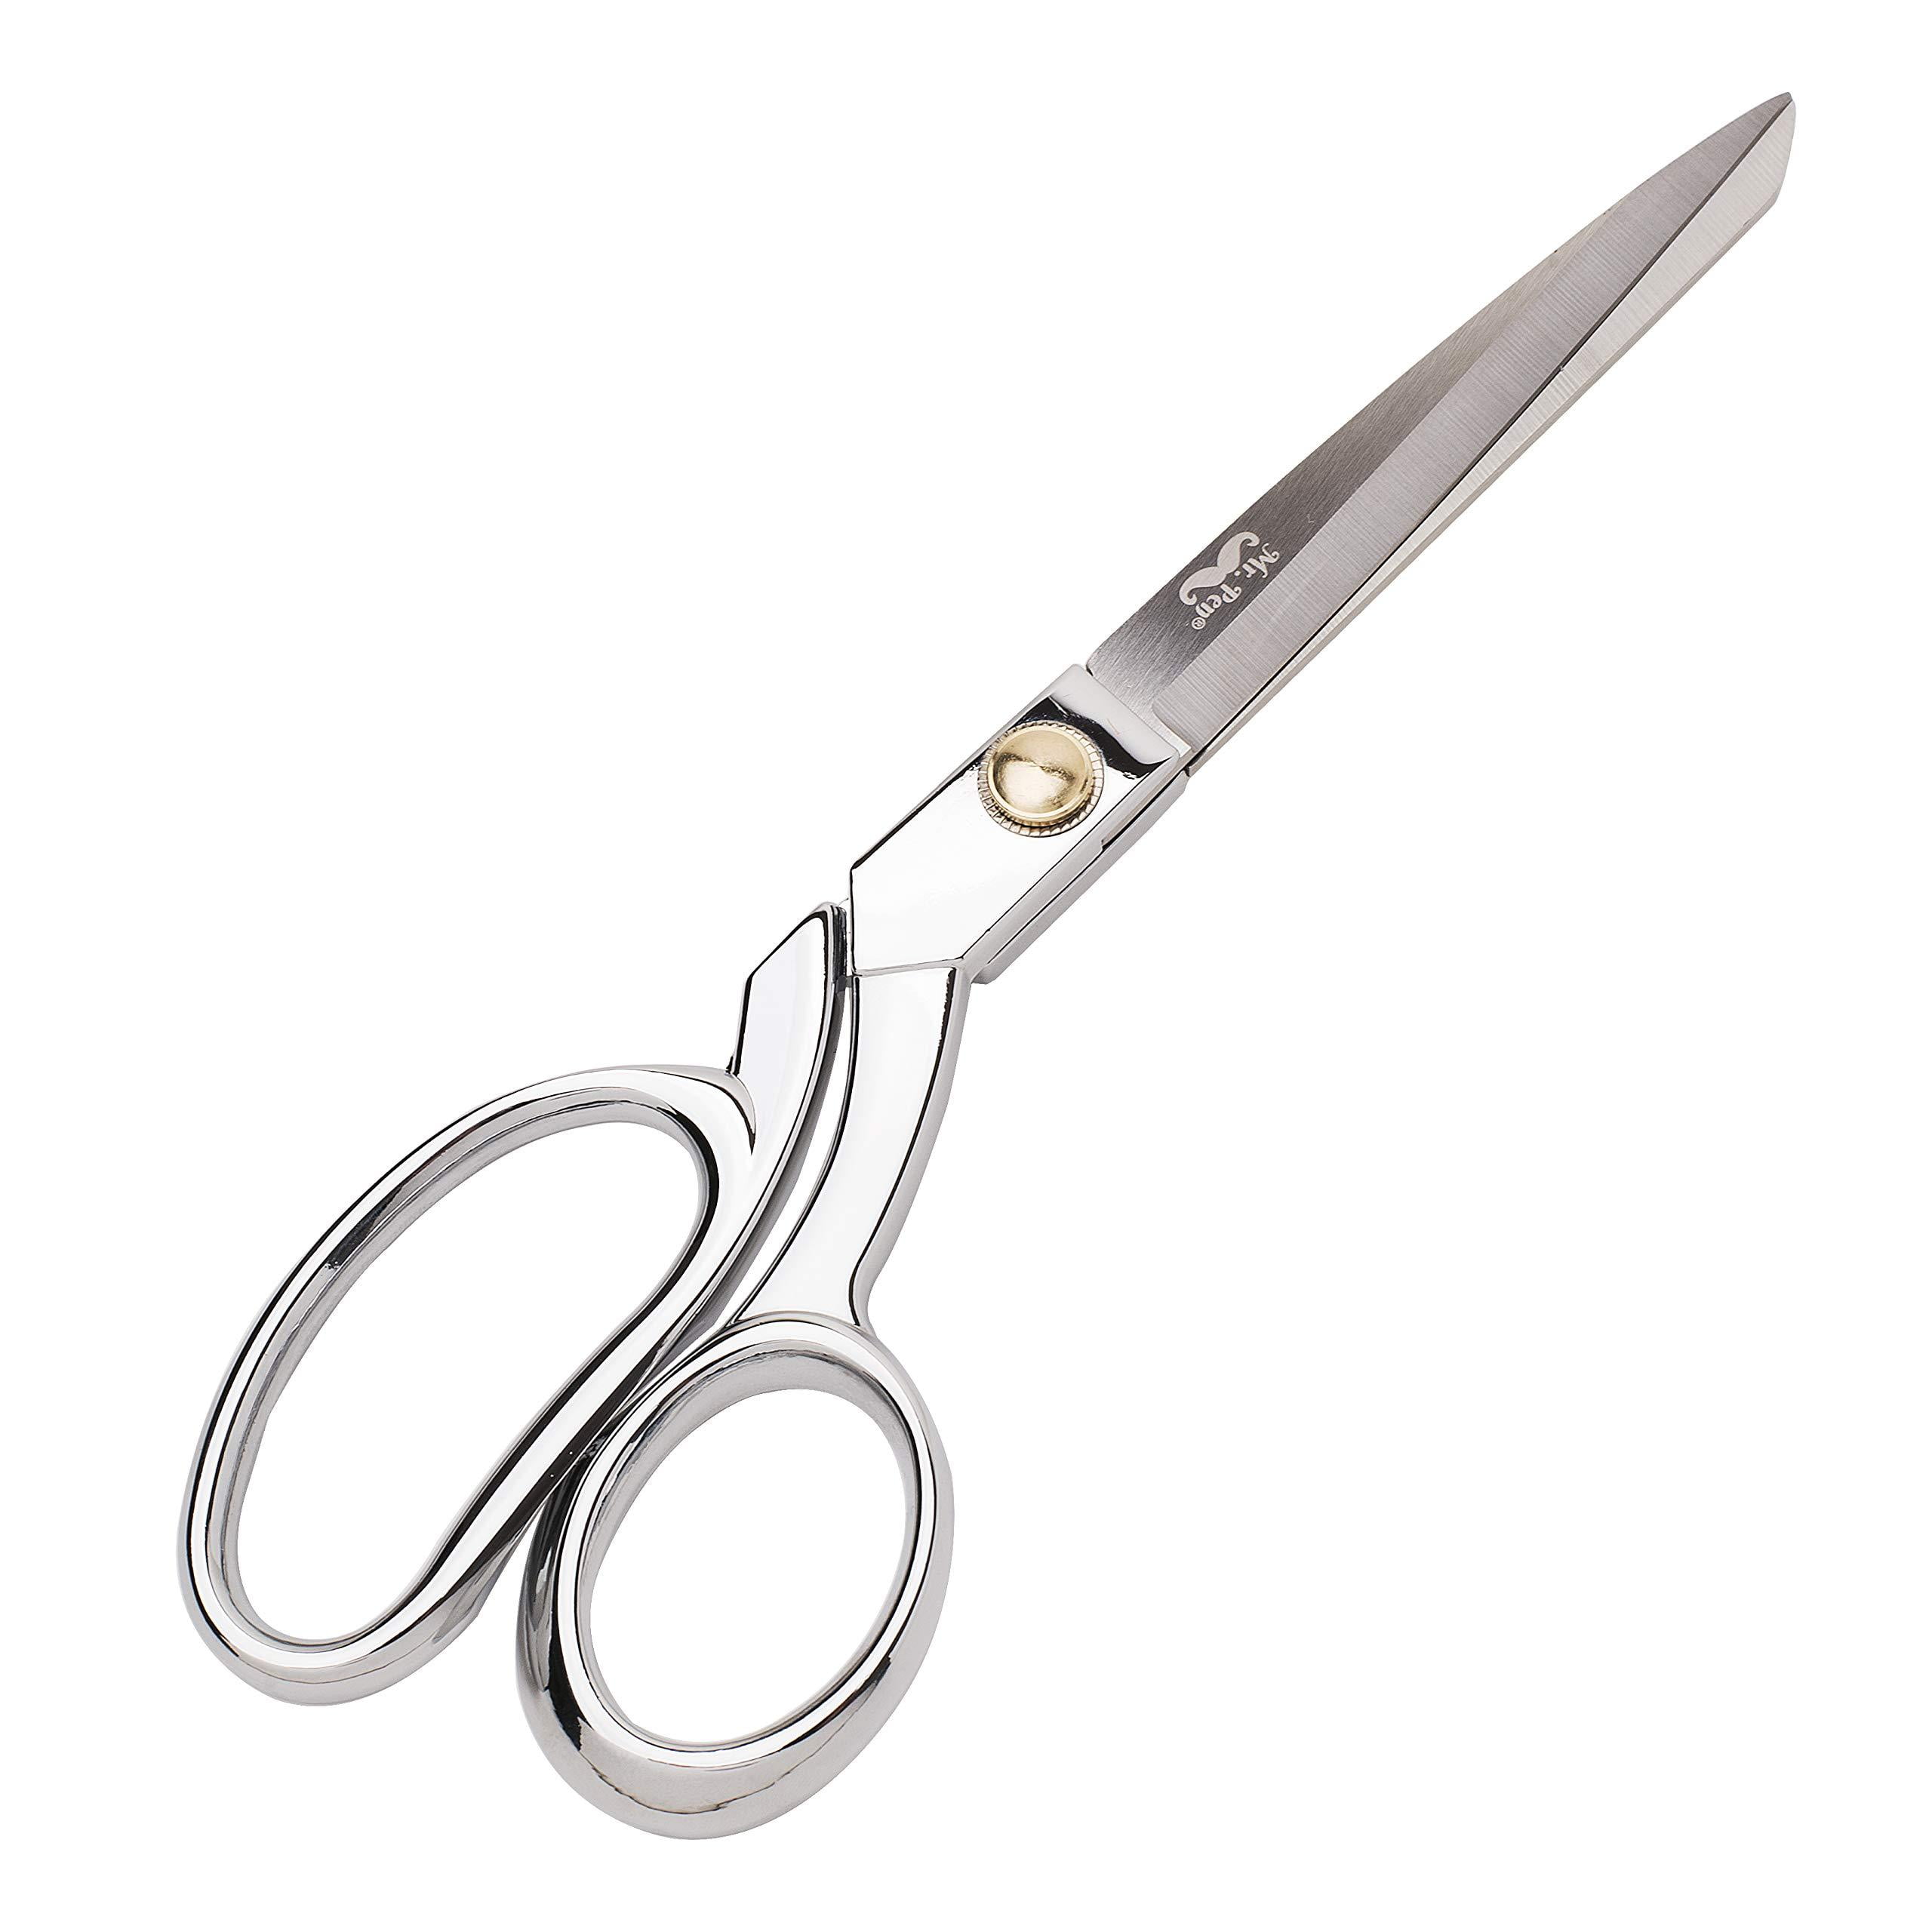 Mr. Pen Fabric Scissors Heavy Duty Sewing Scissors Premium Tailor Scissors 9.5 Inches